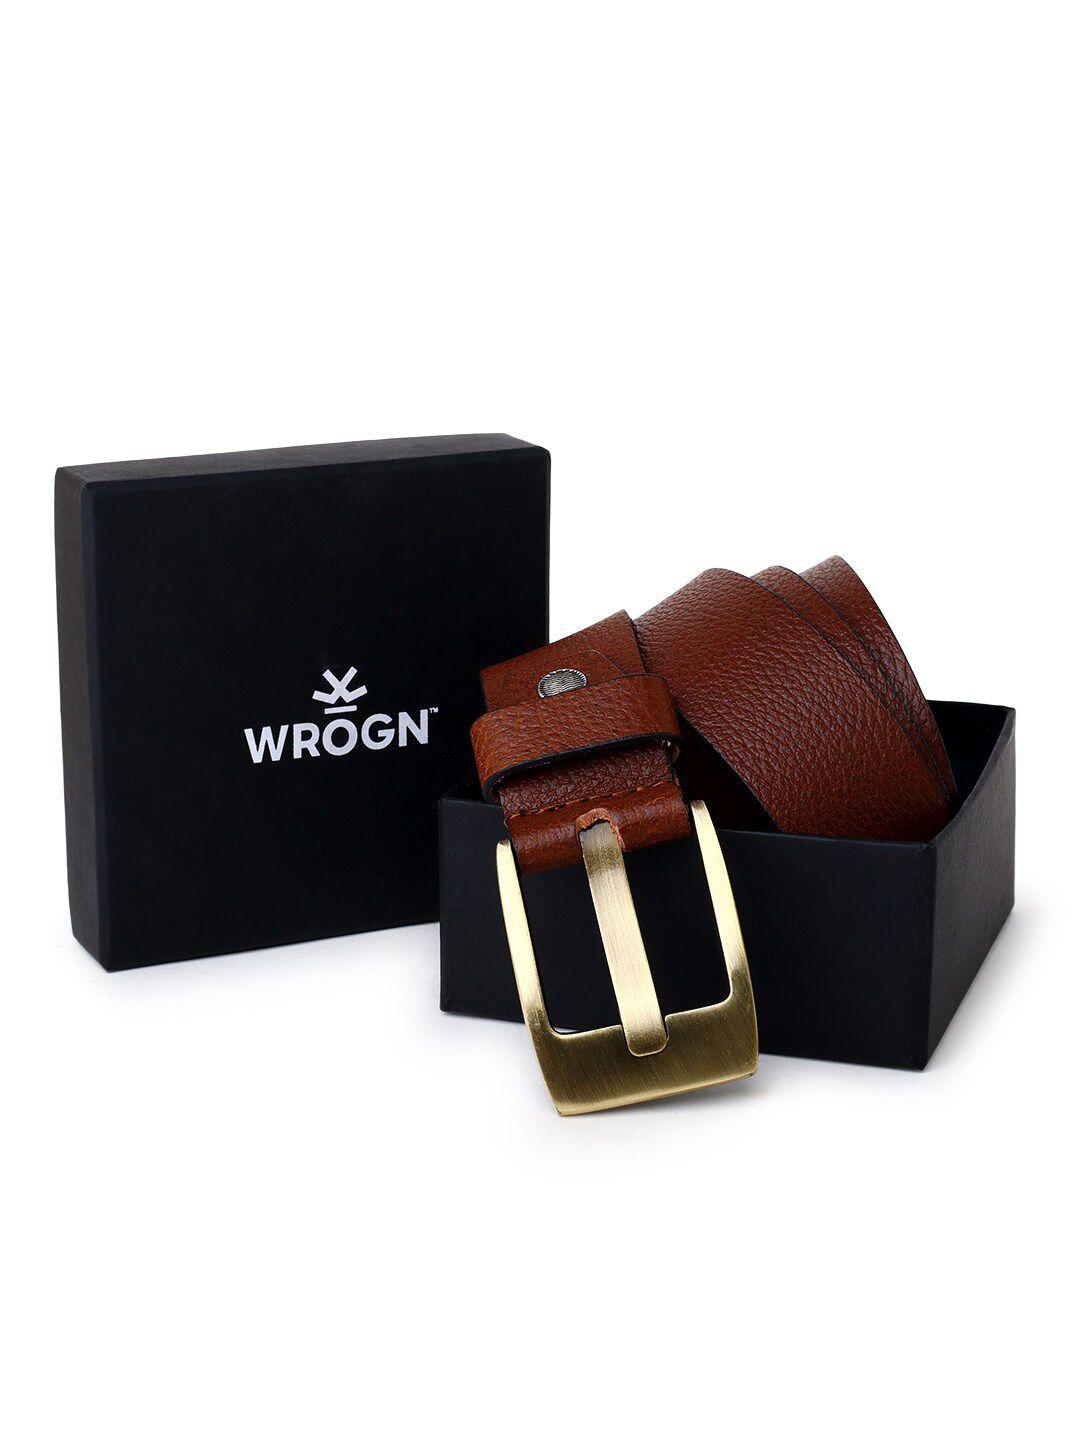 wrogn men textured leather formal belt